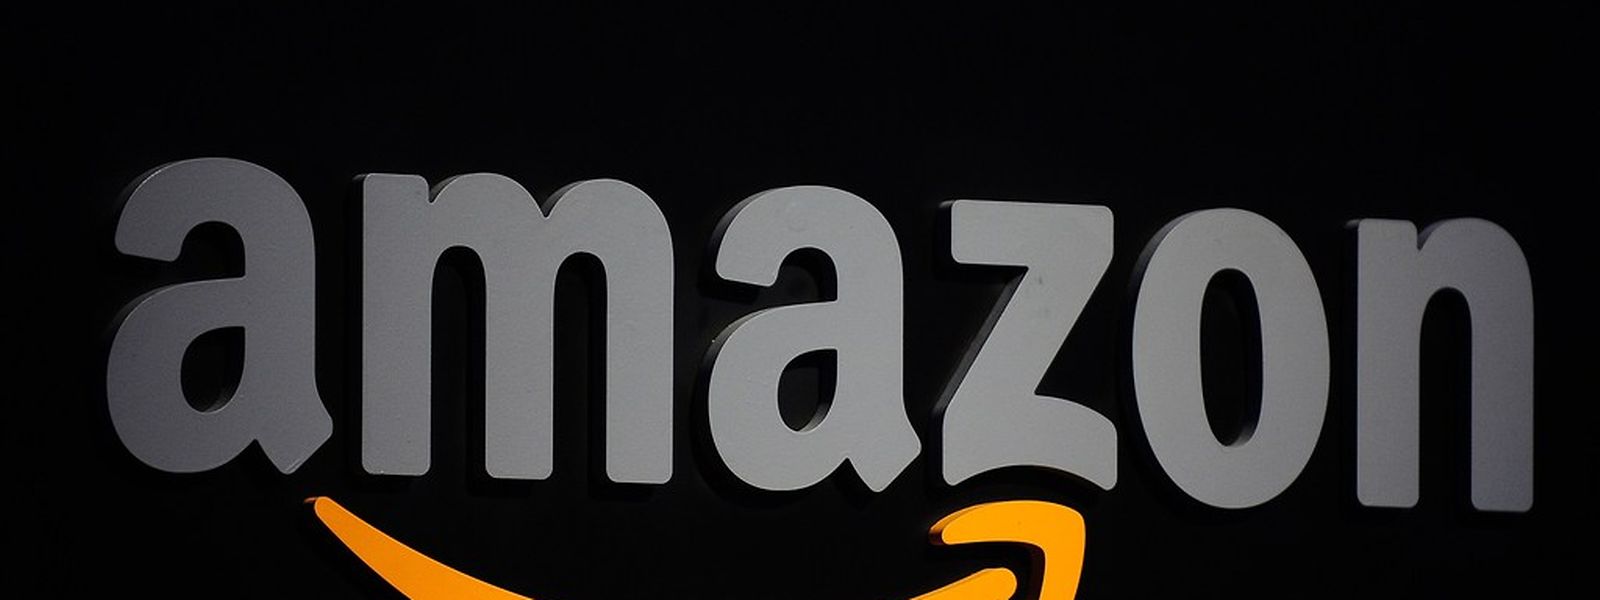 Hat Amazon in Luxemburg von versteckten Staatsbeihilfen profitiert? AFP PHOTO/Emmanuel Dunand